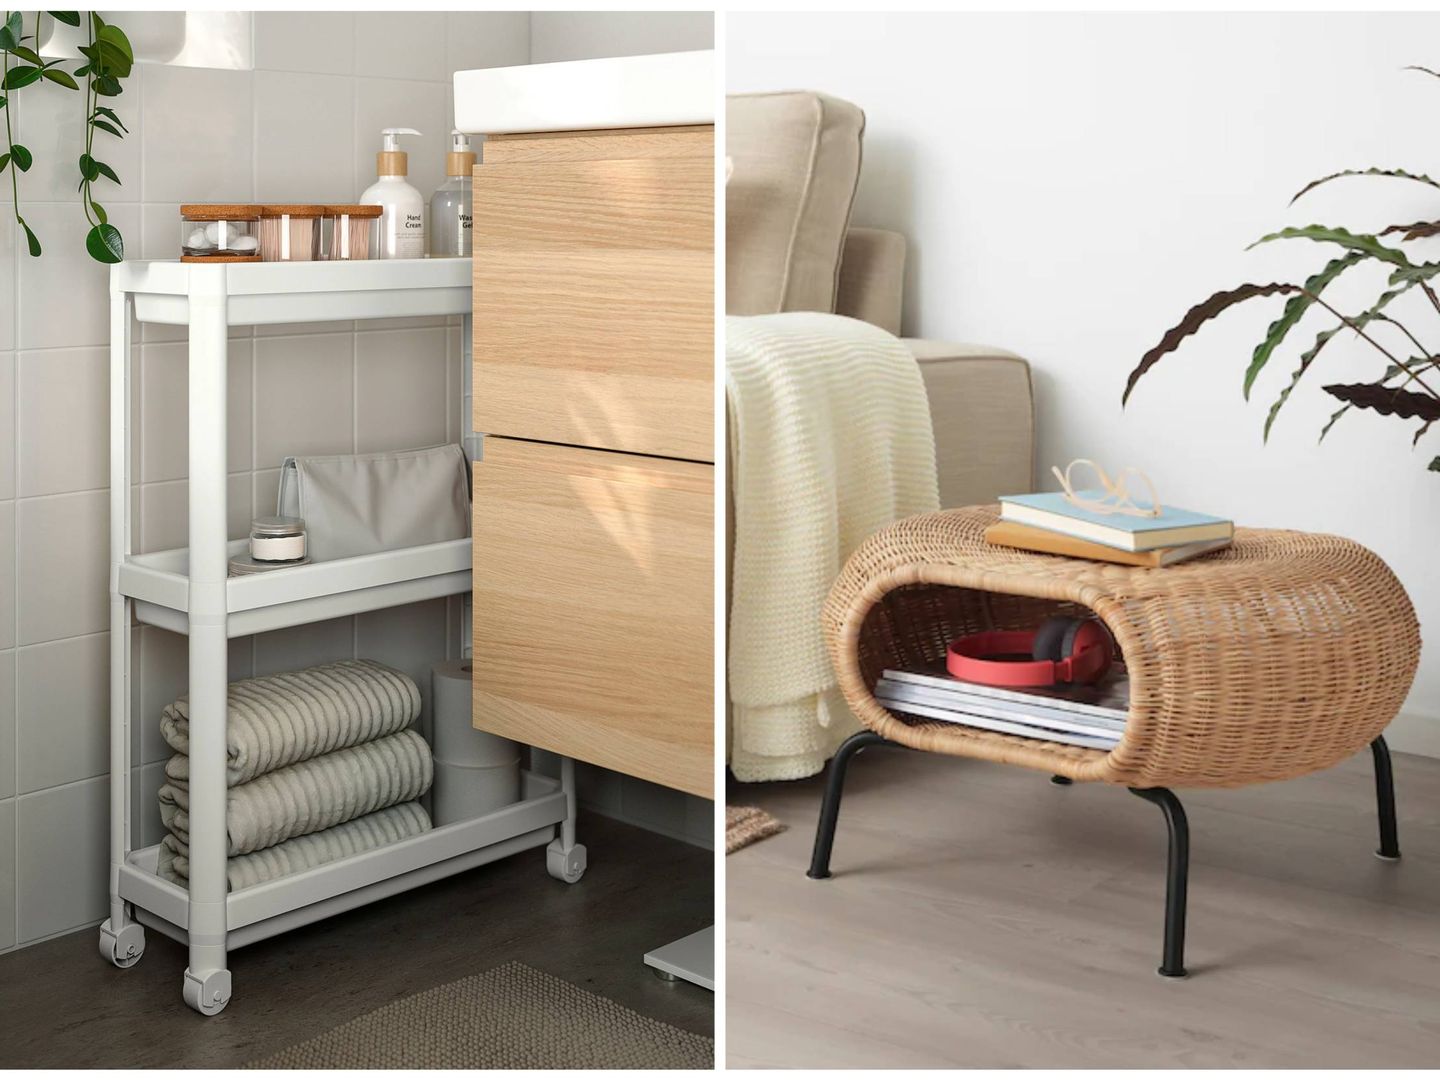 Muebles de Ikea perfectos para una casa pequeña. (Ikea)